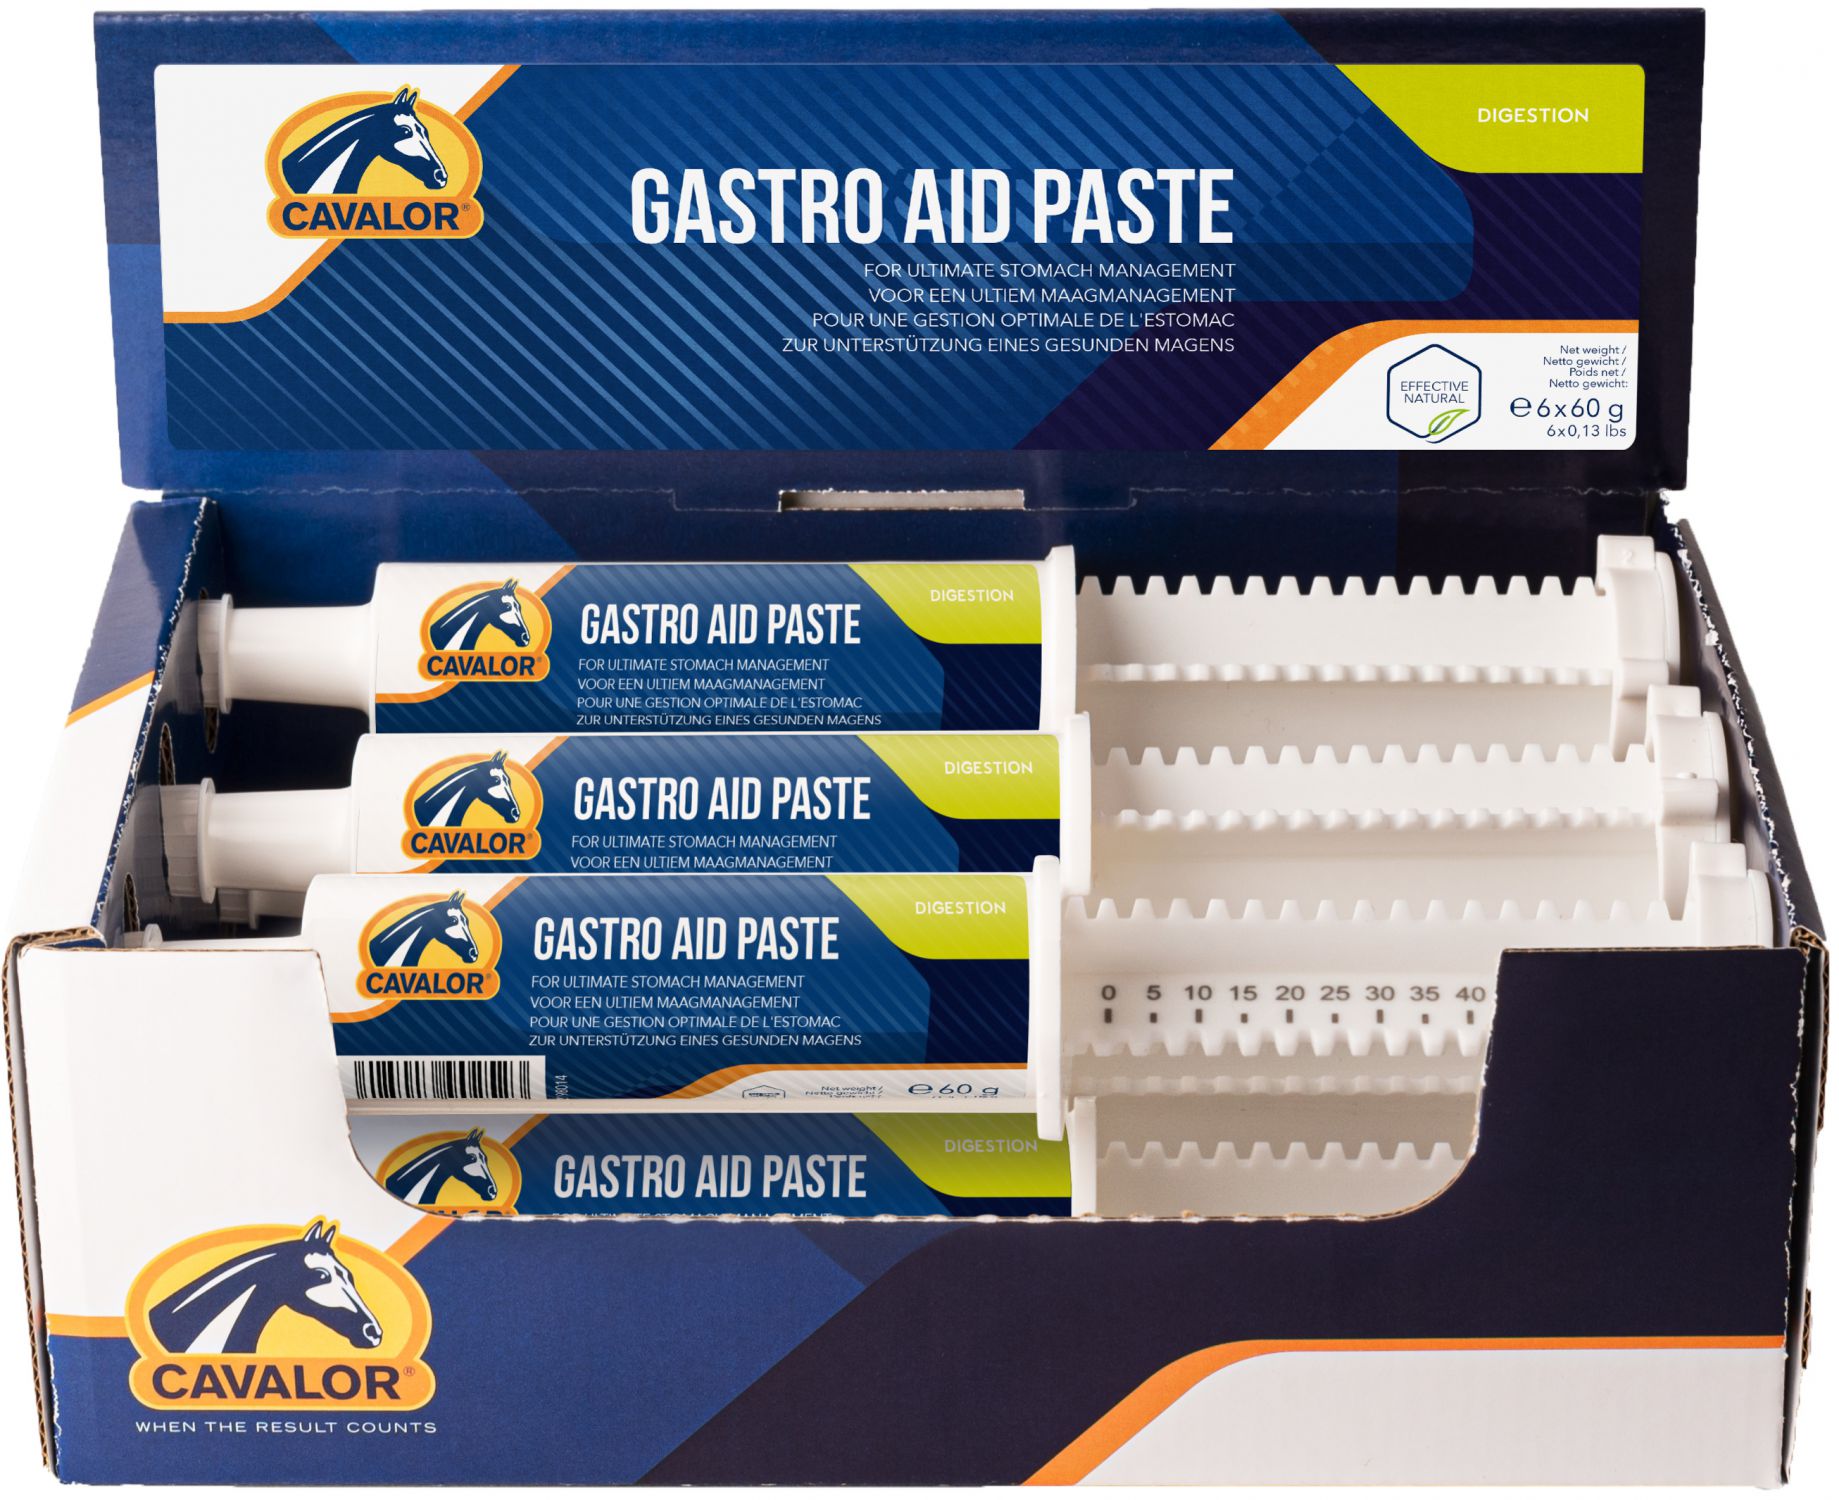 CAVALOR GASTRO AID PASTE 6 X 60 G